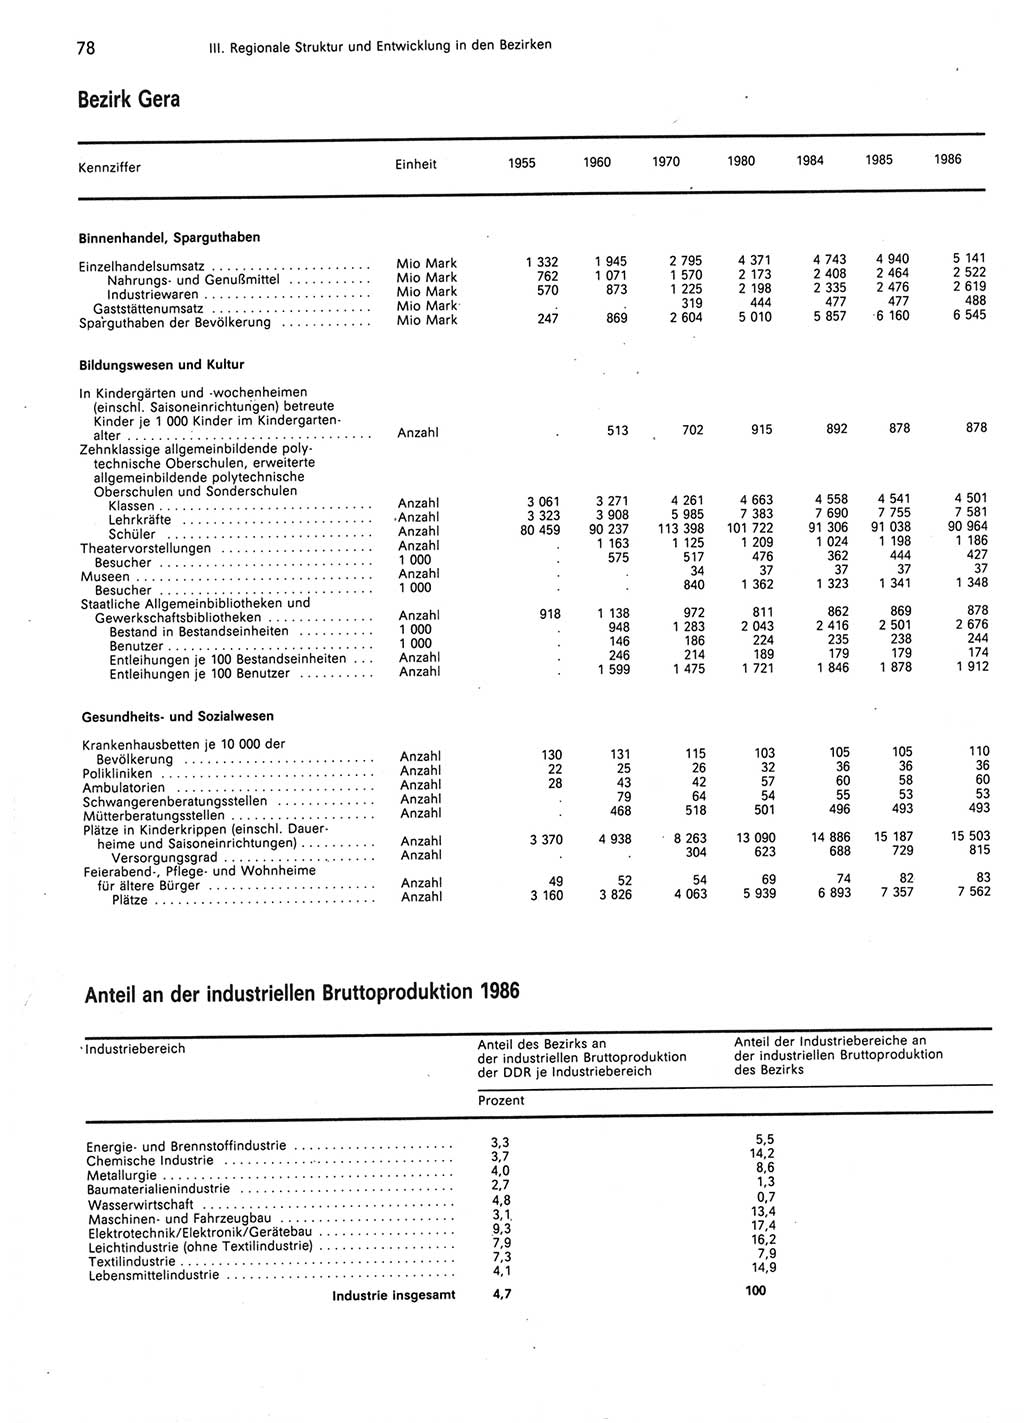 Statistisches Jahrbuch der Deutschen Demokratischen Republik (DDR) 1987, Seite 78 (Stat. Jb. DDR 1987, S. 78)